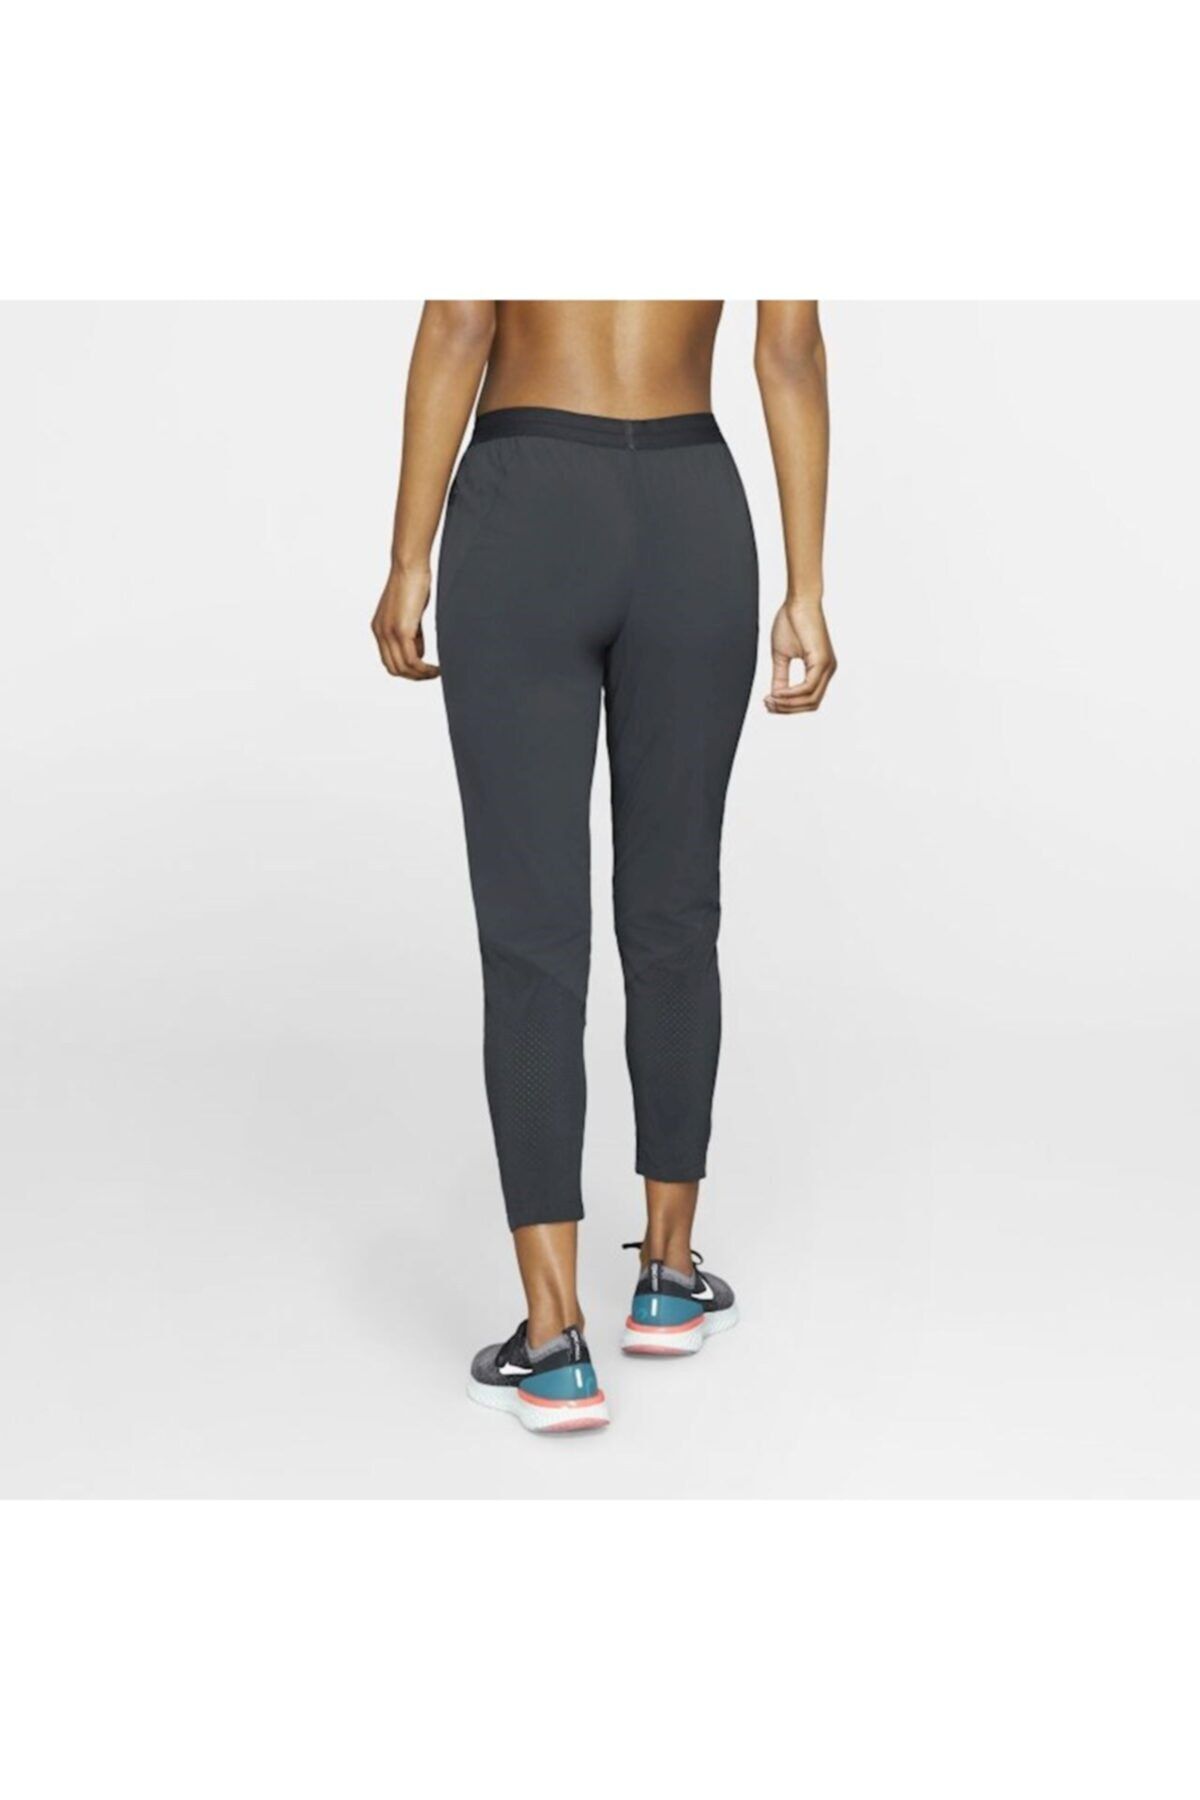 Nike Women's Black Essential Running Sweatpants 7/8 Cd8218-010 - Trendyol